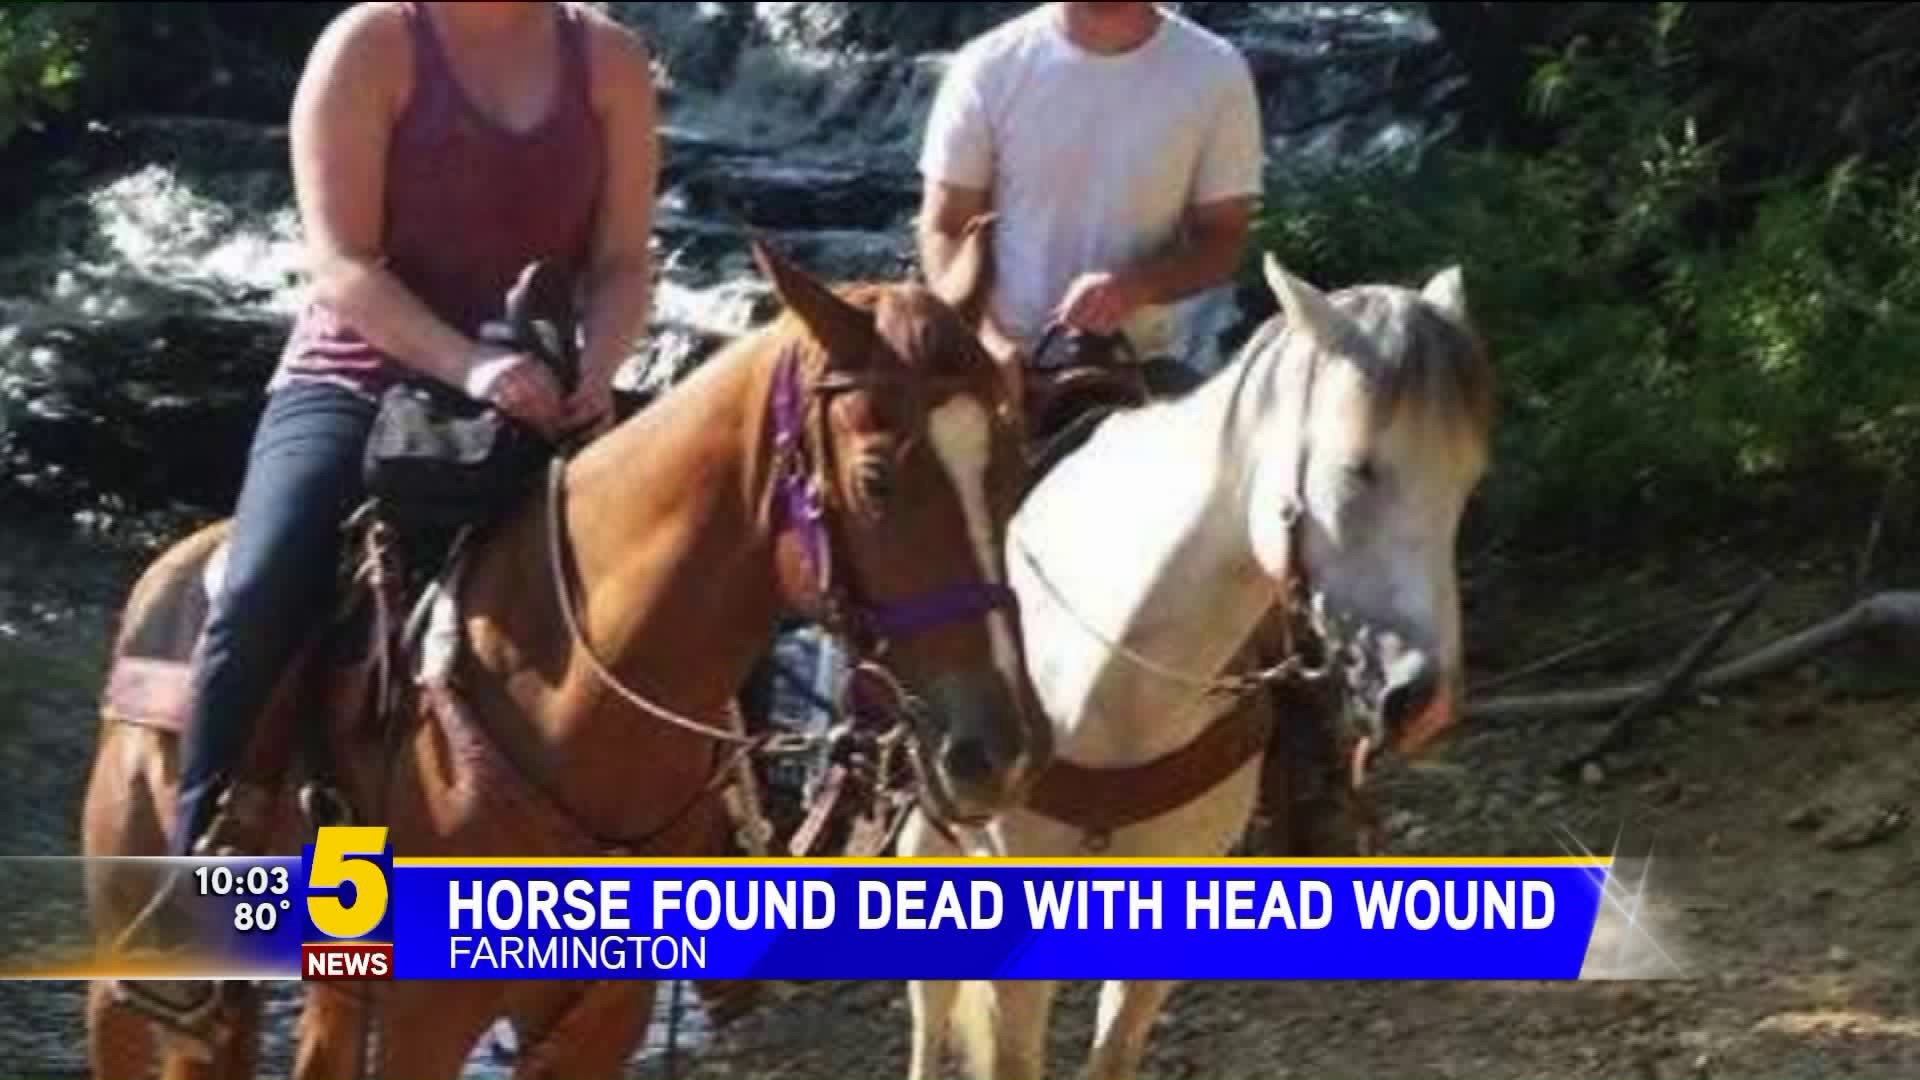 FARMINGTON HORSE FOUND DEAD